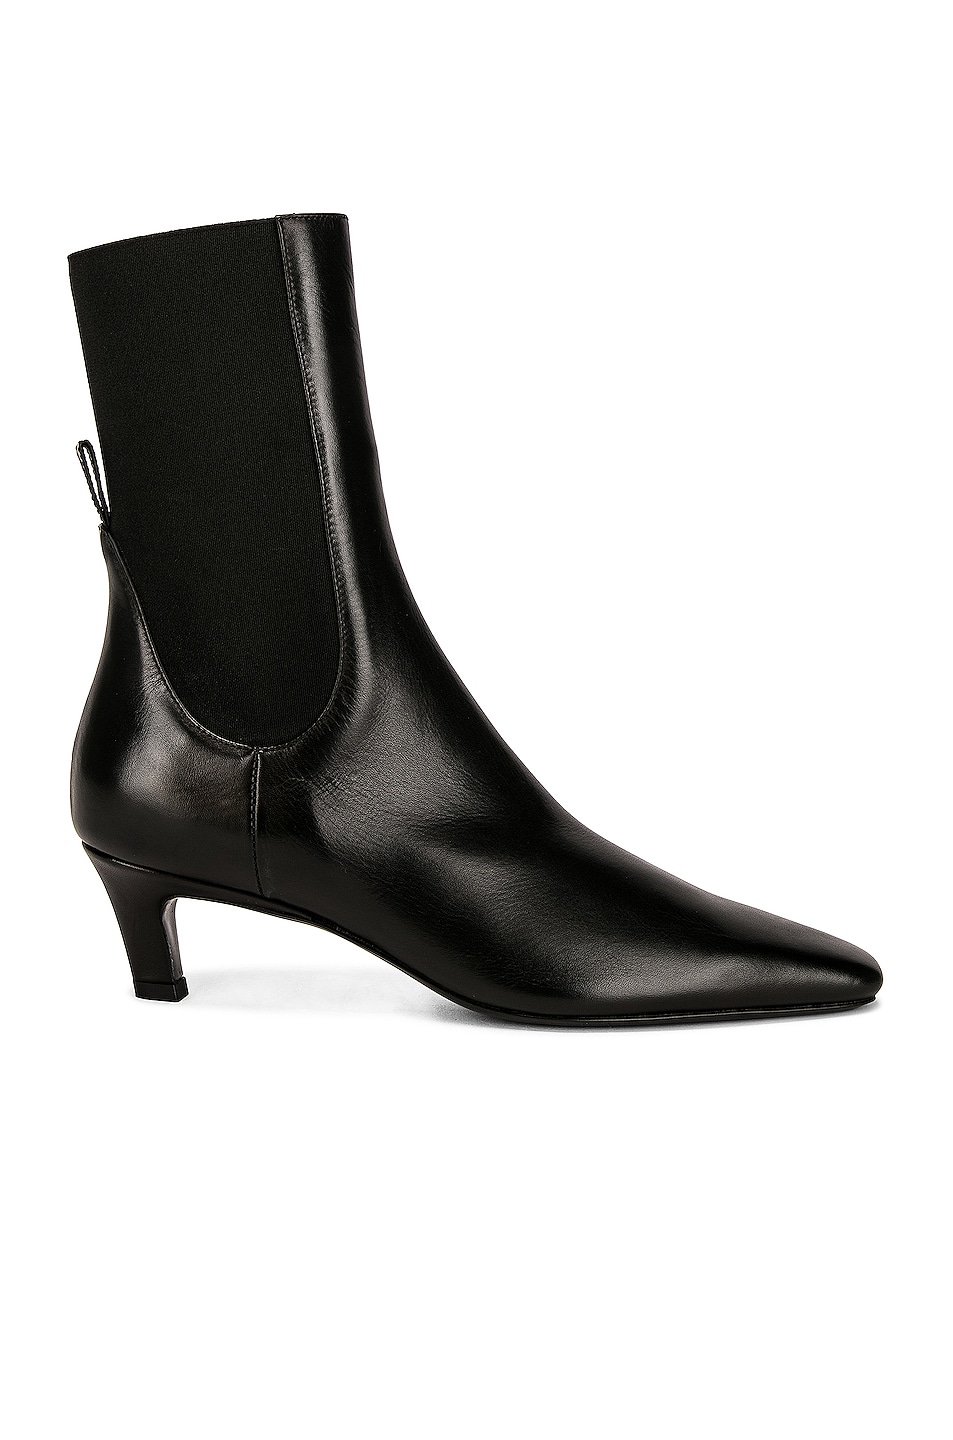 The Mid Heel Boot in Black